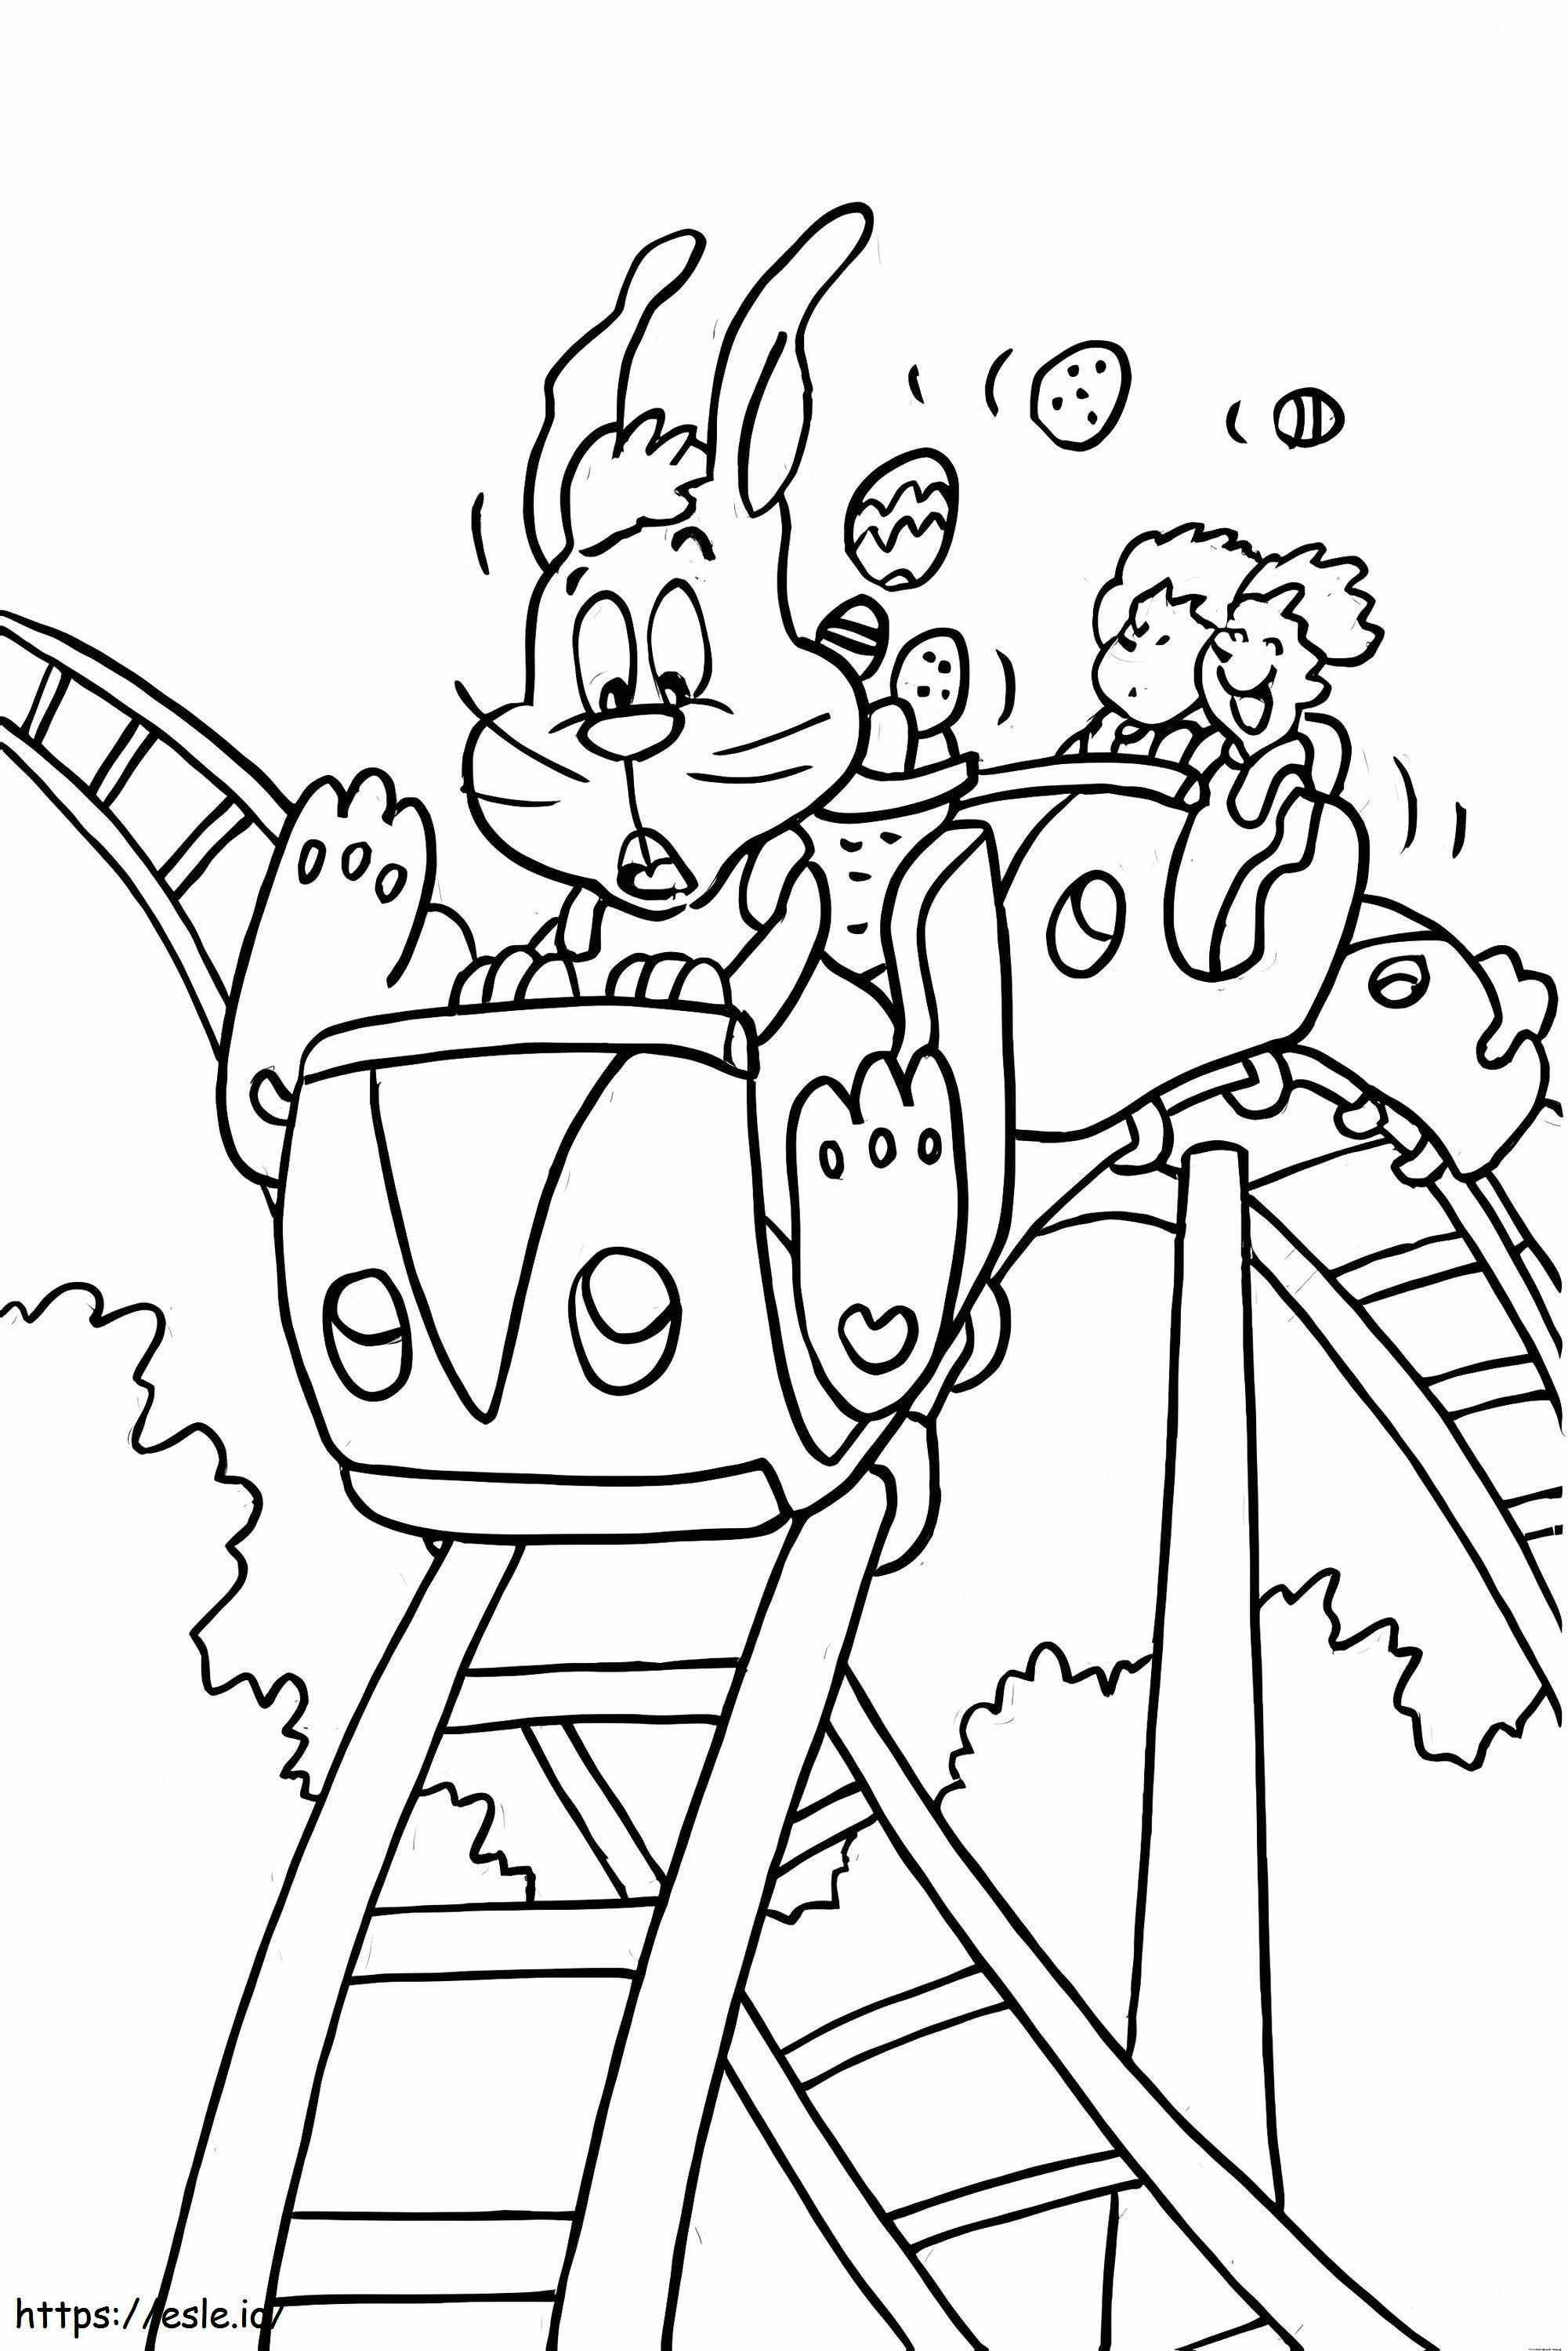 Iepurașul de Paște Pe Roller Coaster de colorat